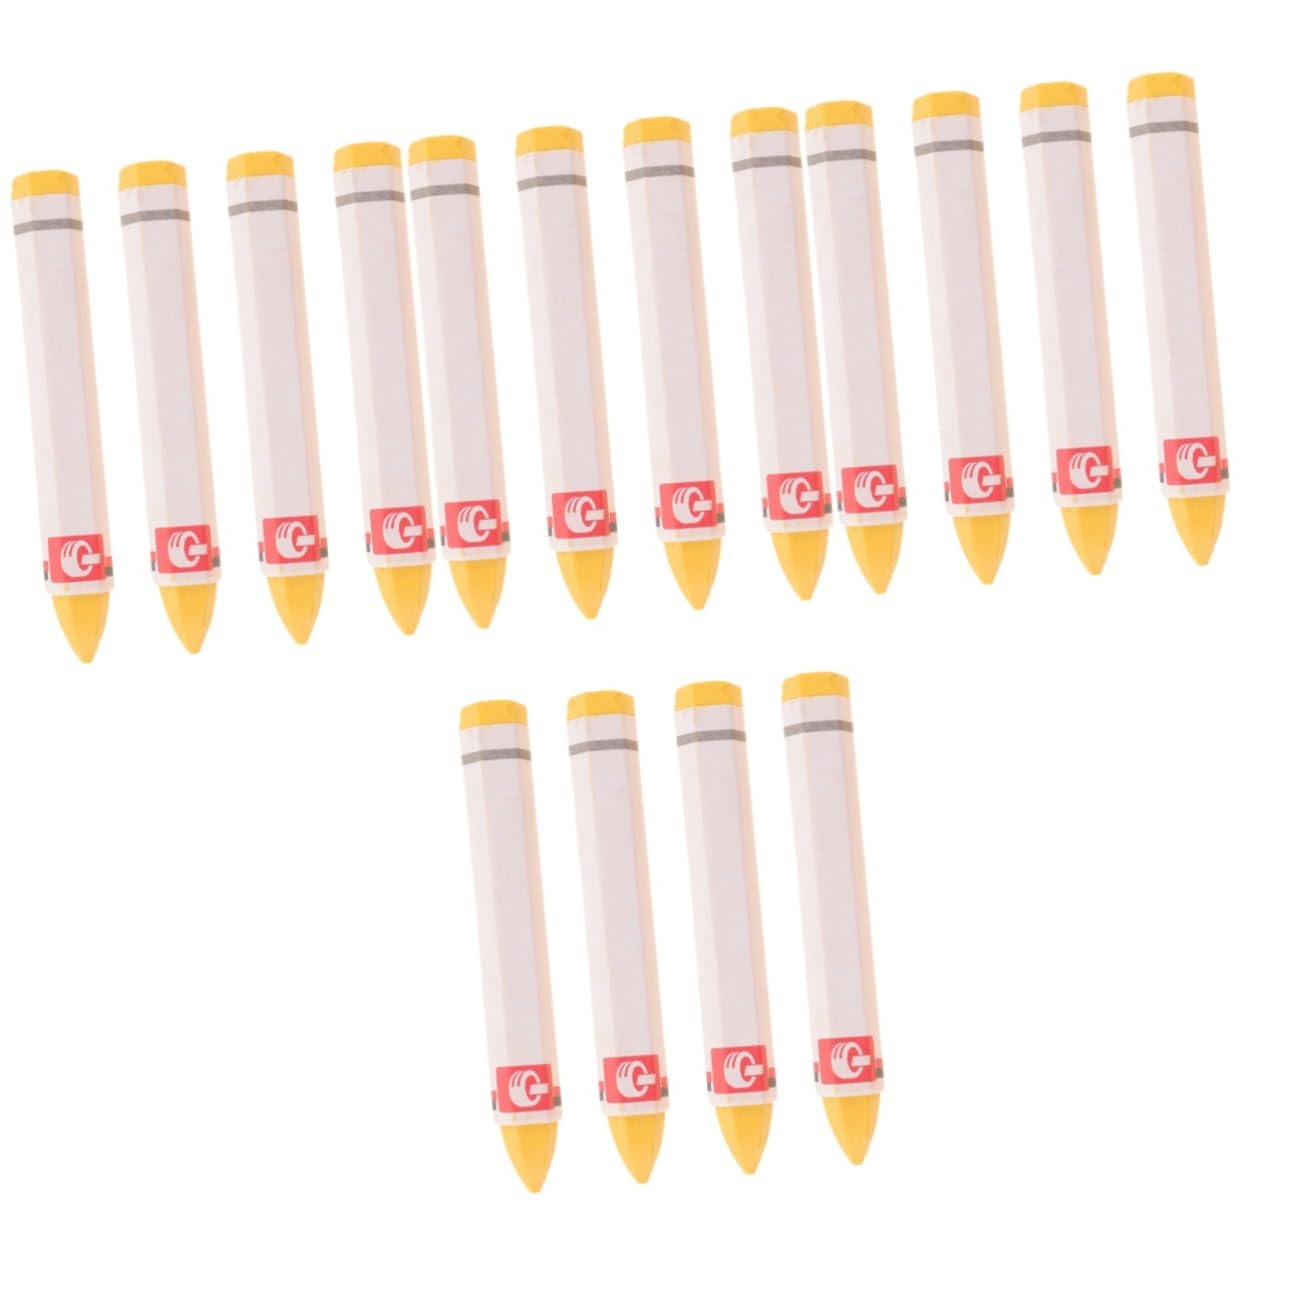 Gatuida 16 Stück Markierungsstifte Autoreifen Wachsstifte Markierstifte Reifenstifte Zum Markieren Von Wachsmarkierungswachsmarkierungsstiften Reifenreparaturstifte Autoreifenstifte von Gatuida